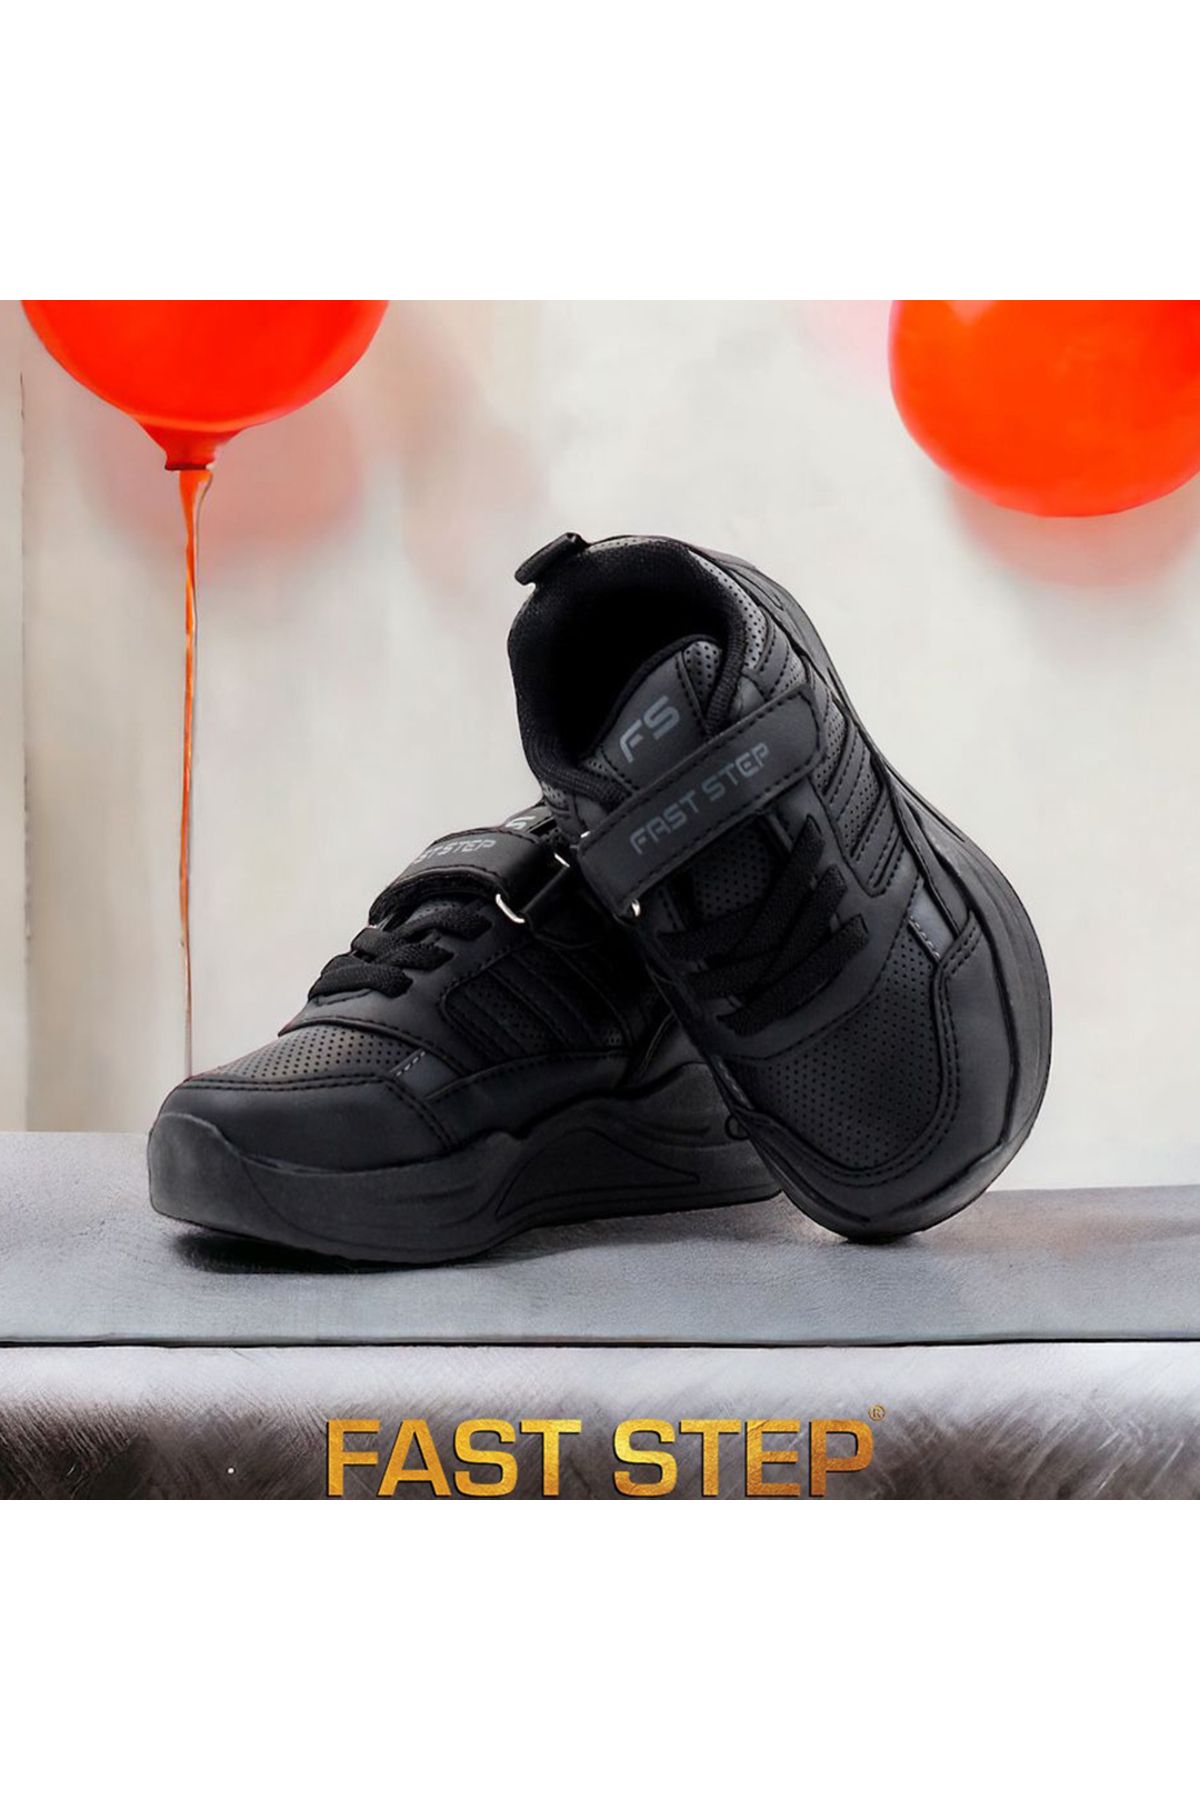 Fast Step Unisex Spor Rahat Yüksek Taban Hafif Sneaker Bağcıklı Yazlık Çocuk Ayakkabı 868xca307